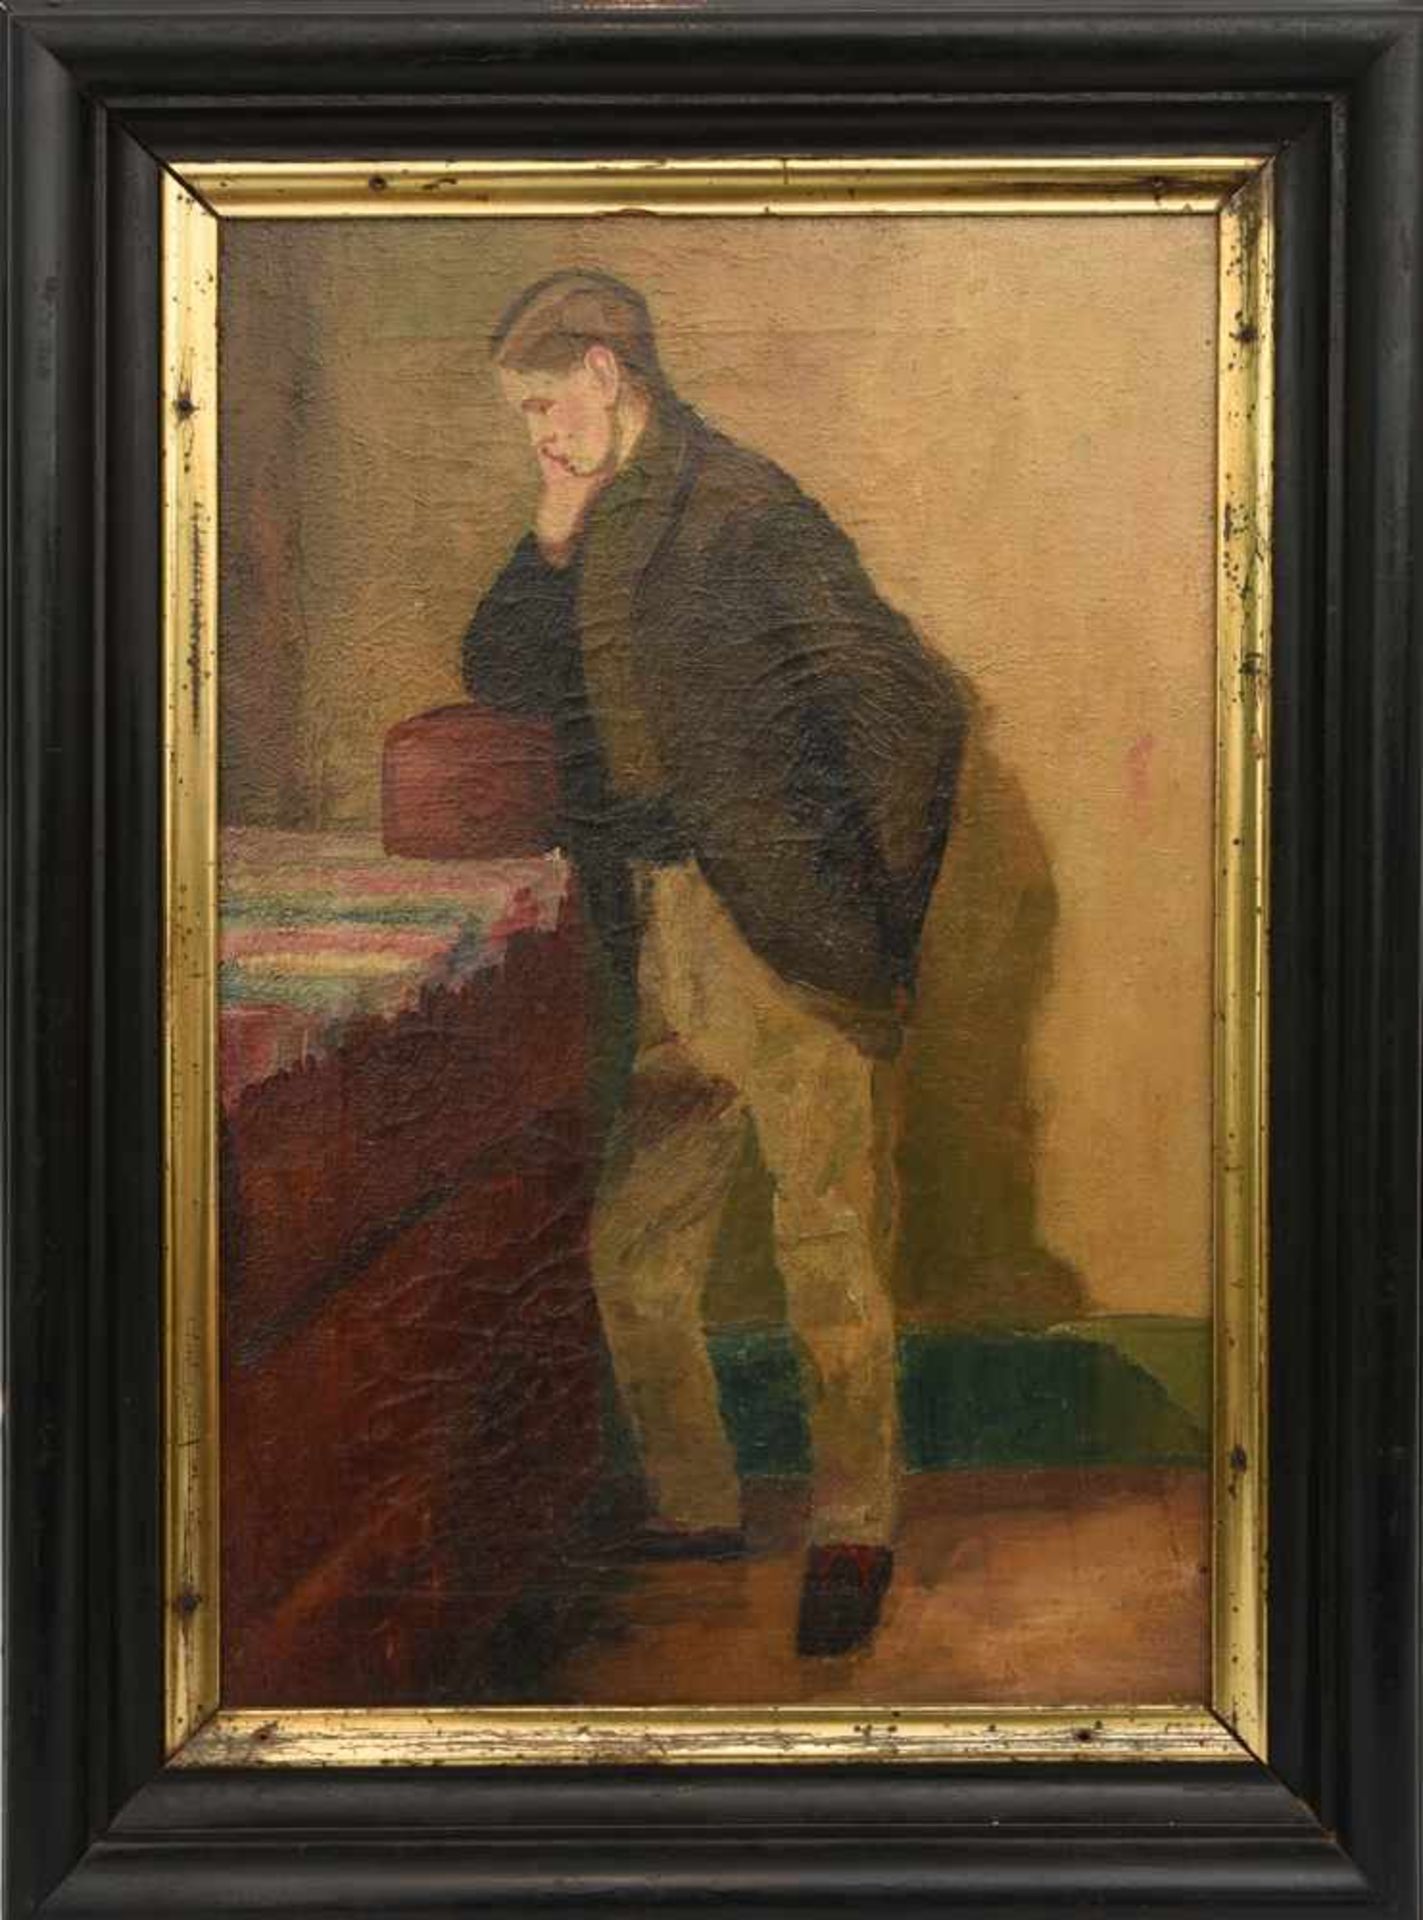 UNBEKANNTER MALER, "Porträt eines jungen Mannes mit Schatulle", Öl auf Leinwand, gerahmt, um 1890